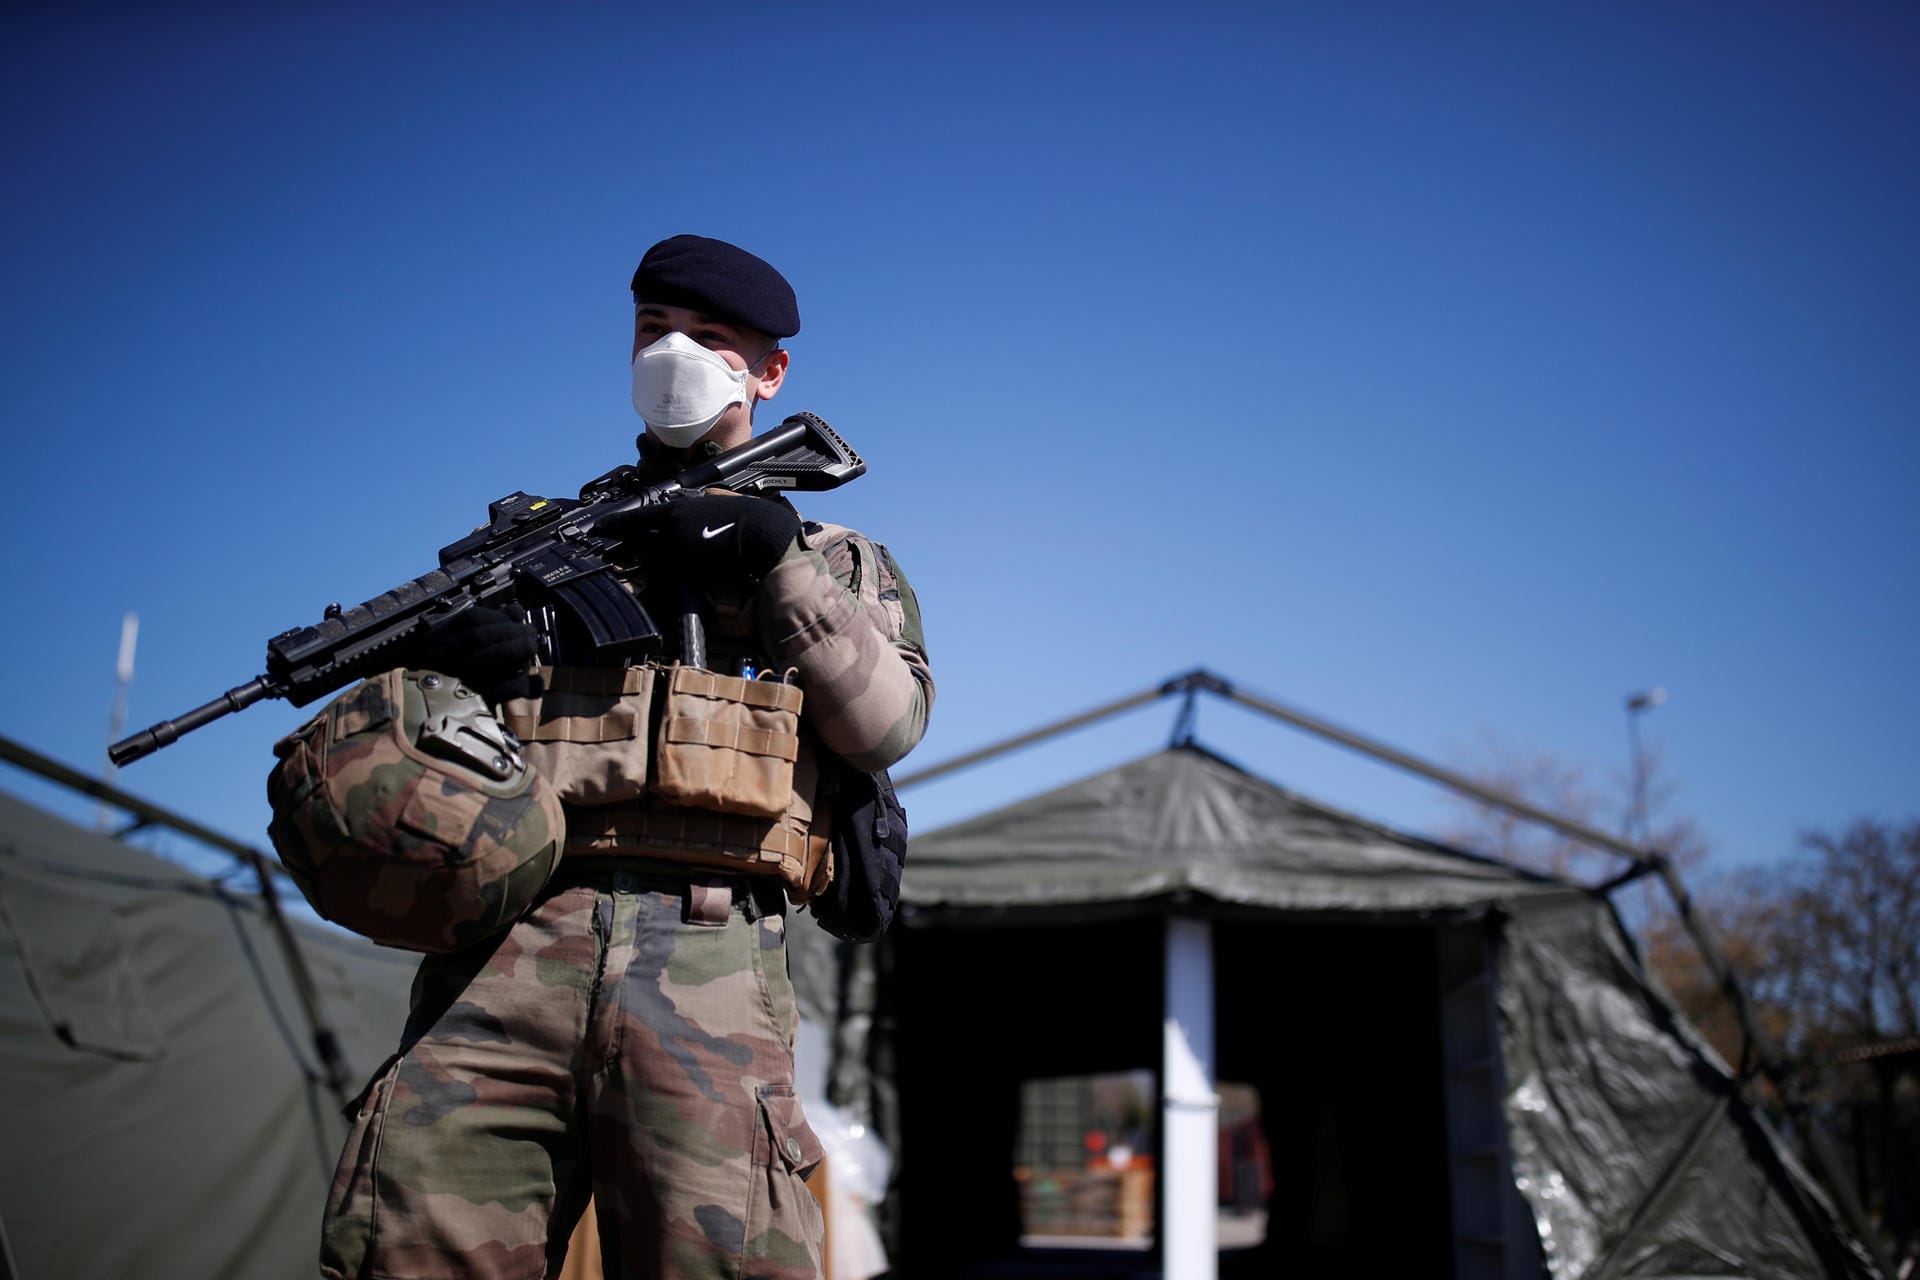 Frankreich, Mulhouse: Die französische Regierung setzt zunehmend auf die Hilfe des Militärs. In Mulhouse, im Osten Frankreichs, bauen und bewachen Soldaten ein Notfall-Feldlager für Corona-Patienten.